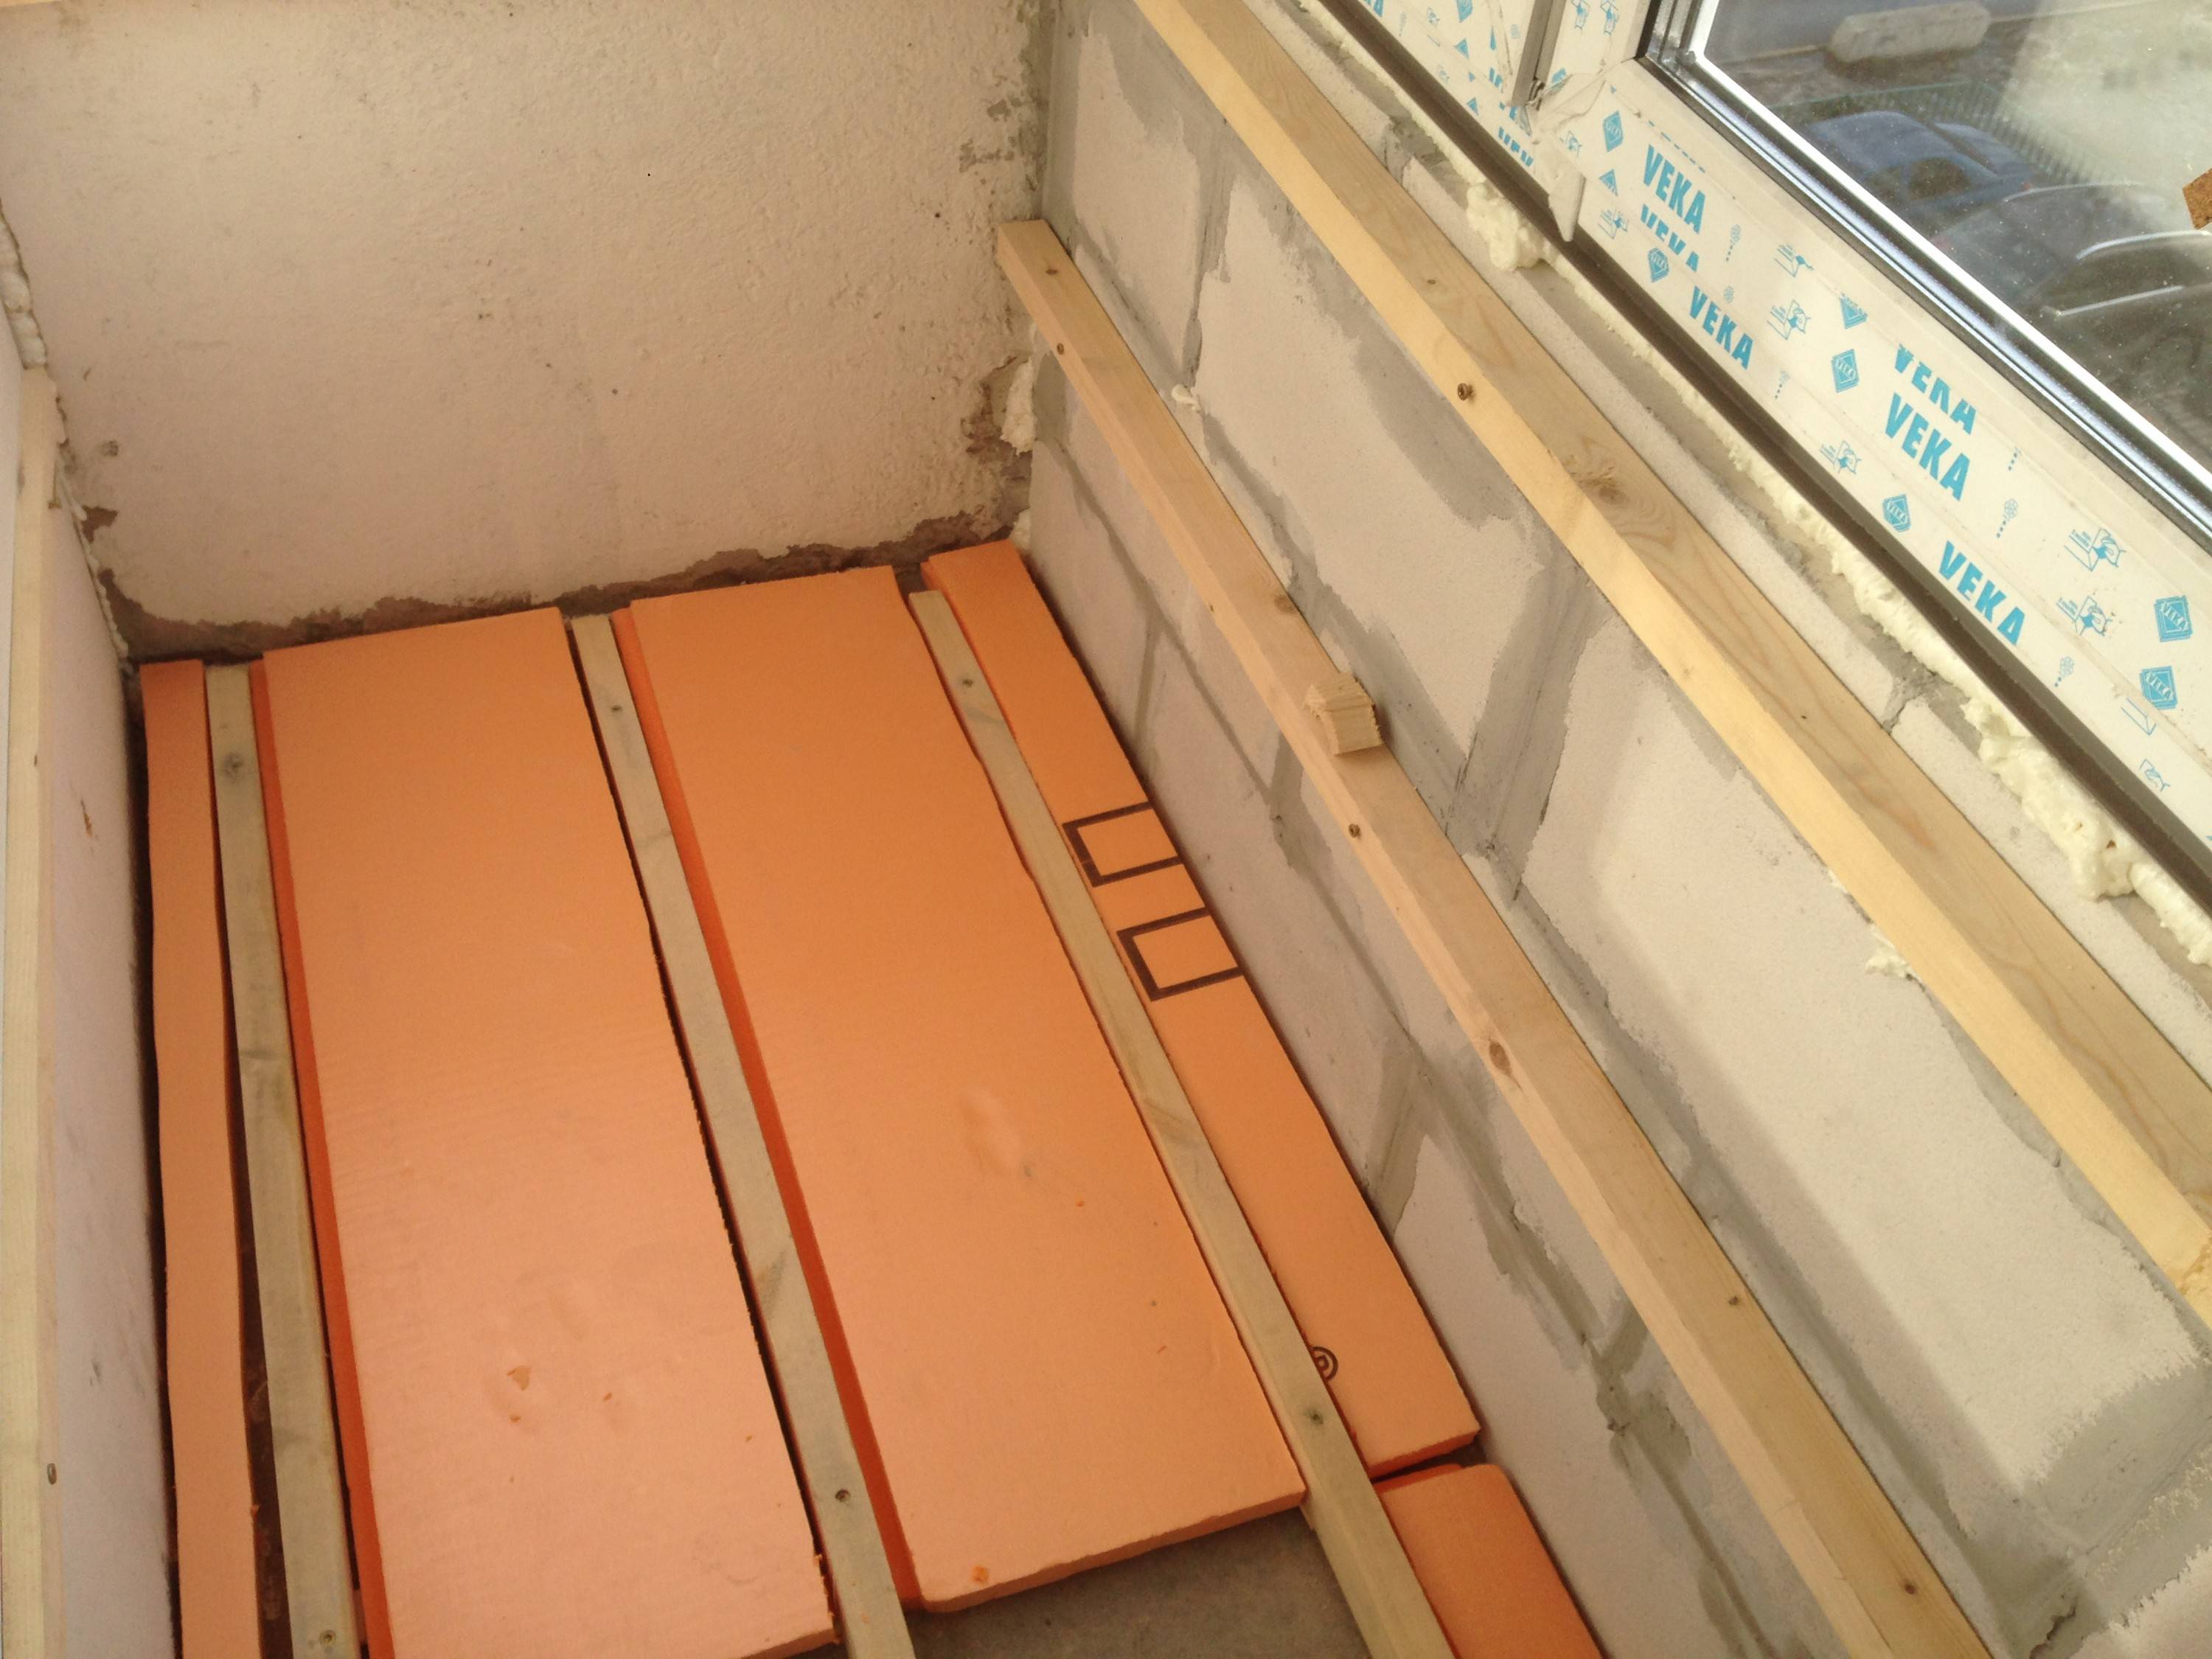 Утепление балкона изнутри: описание материалов, полная пошаговая инструкция как все сделать своими руками (40+ фото видео) +отзывы